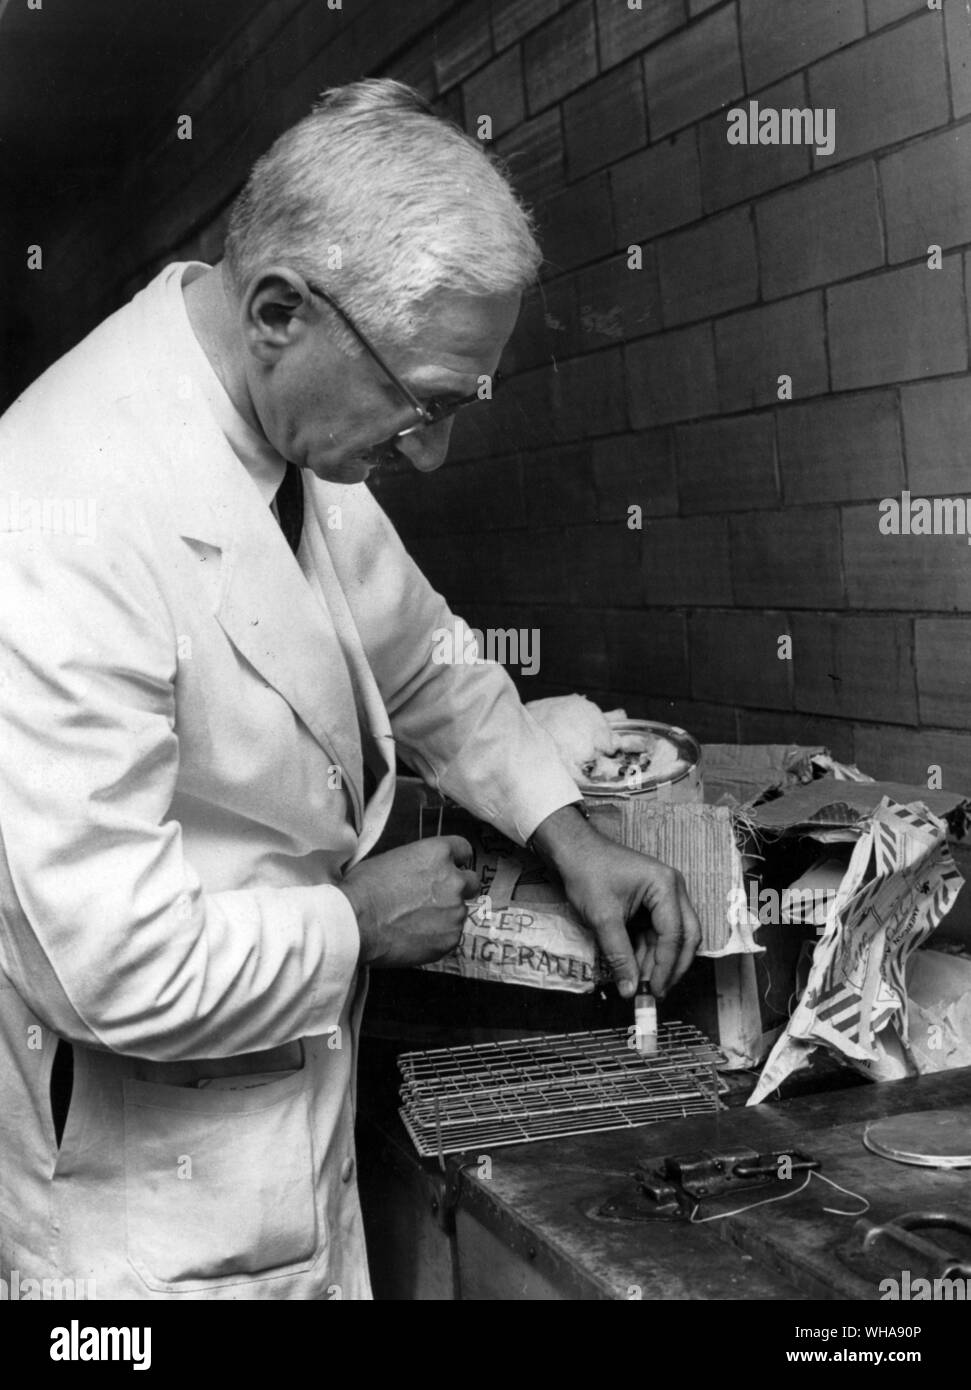 Le sang et les échantillons obtenus dans une étude mexicaine sont inspectés par un médecin à l'arrivée à l'Université de Cincinnati où il effectue en laboratoire de virus vivant de la recherche. 1959 Banque D'Images